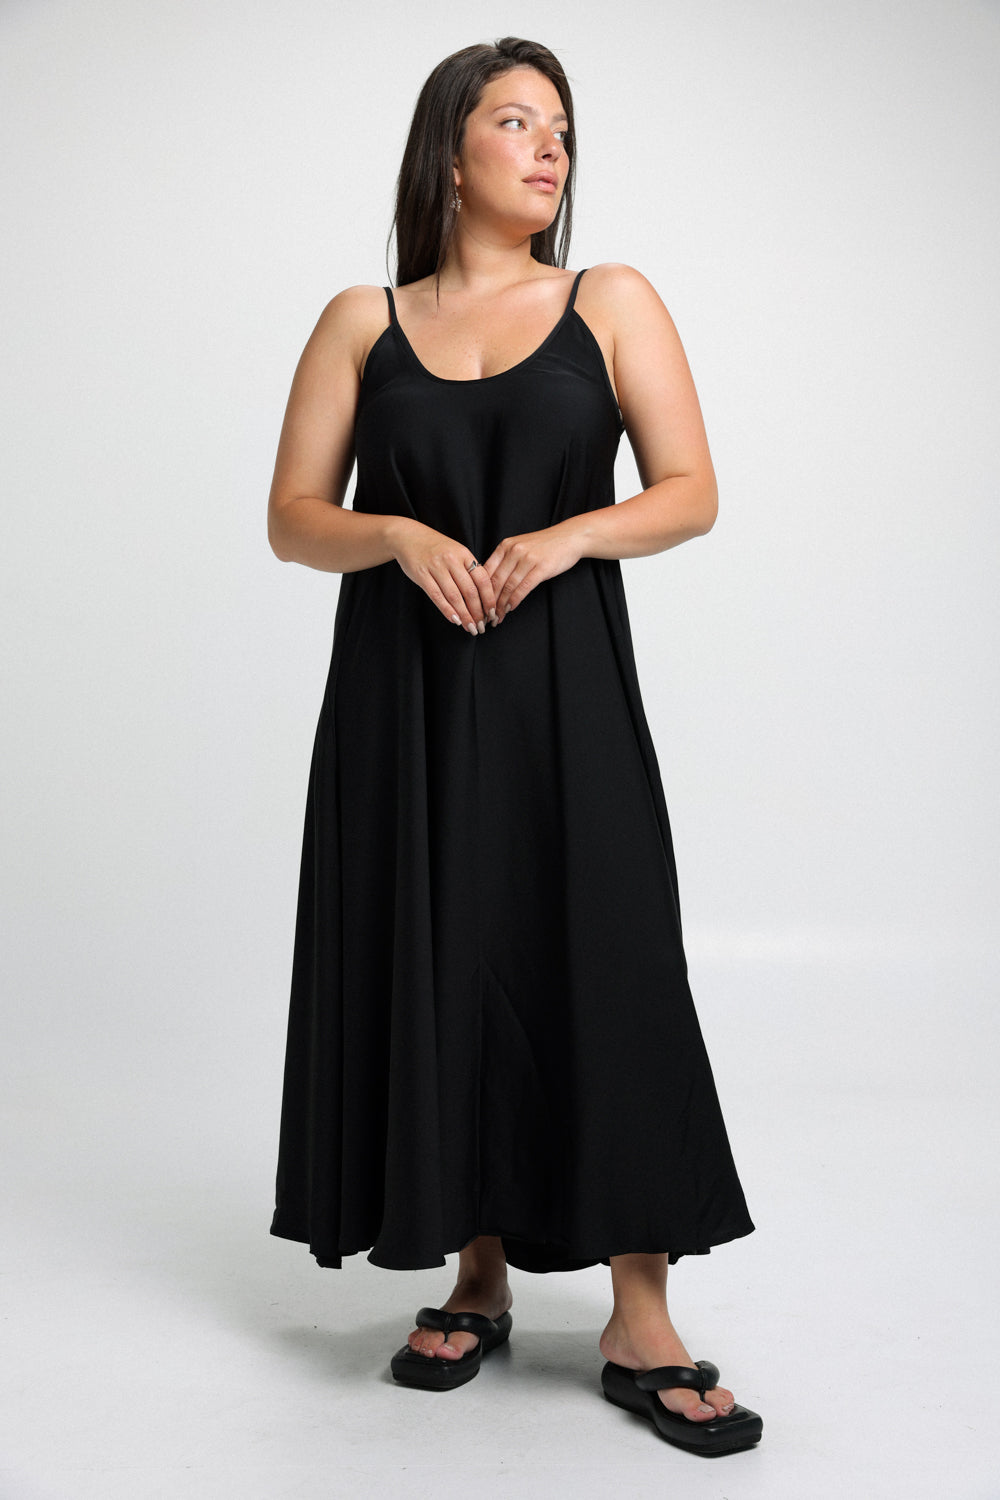 שמלת מקסי שחורה דגם Summer Black Dress מידה גדולה